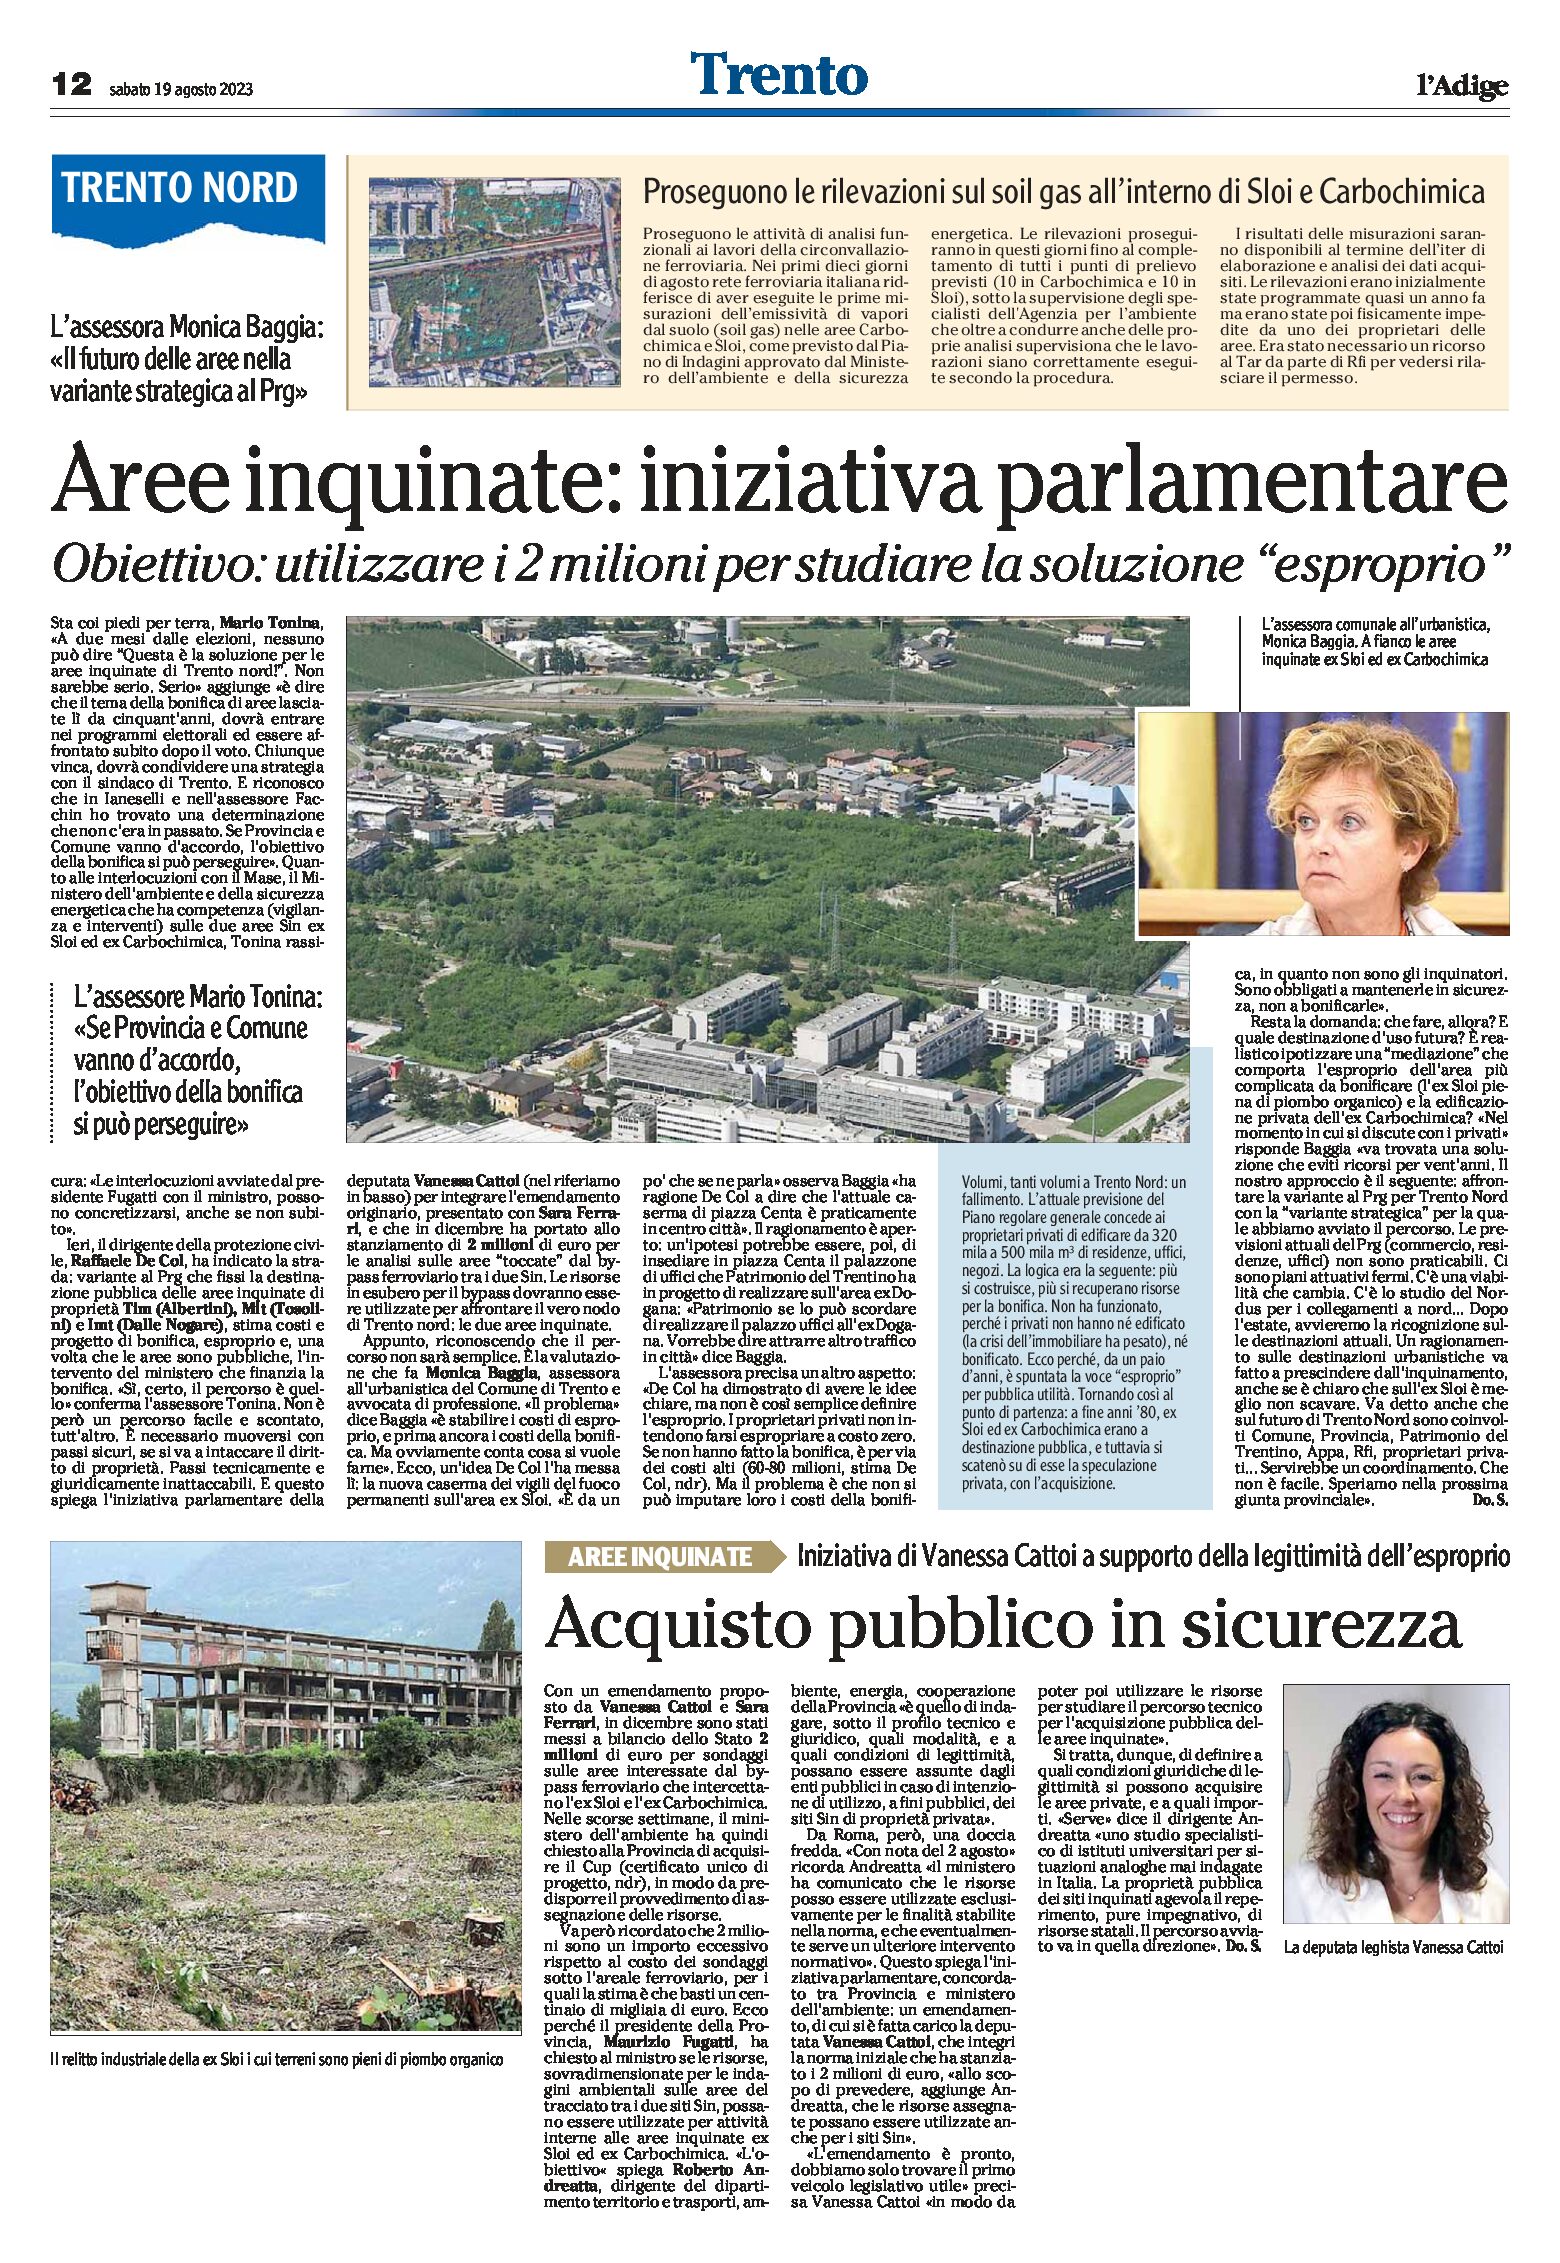 Trento Nord, aree inquinate: iniziativa parlamentare. Utilizzare i 2 milioni per studiare la soluzione “esproprio”